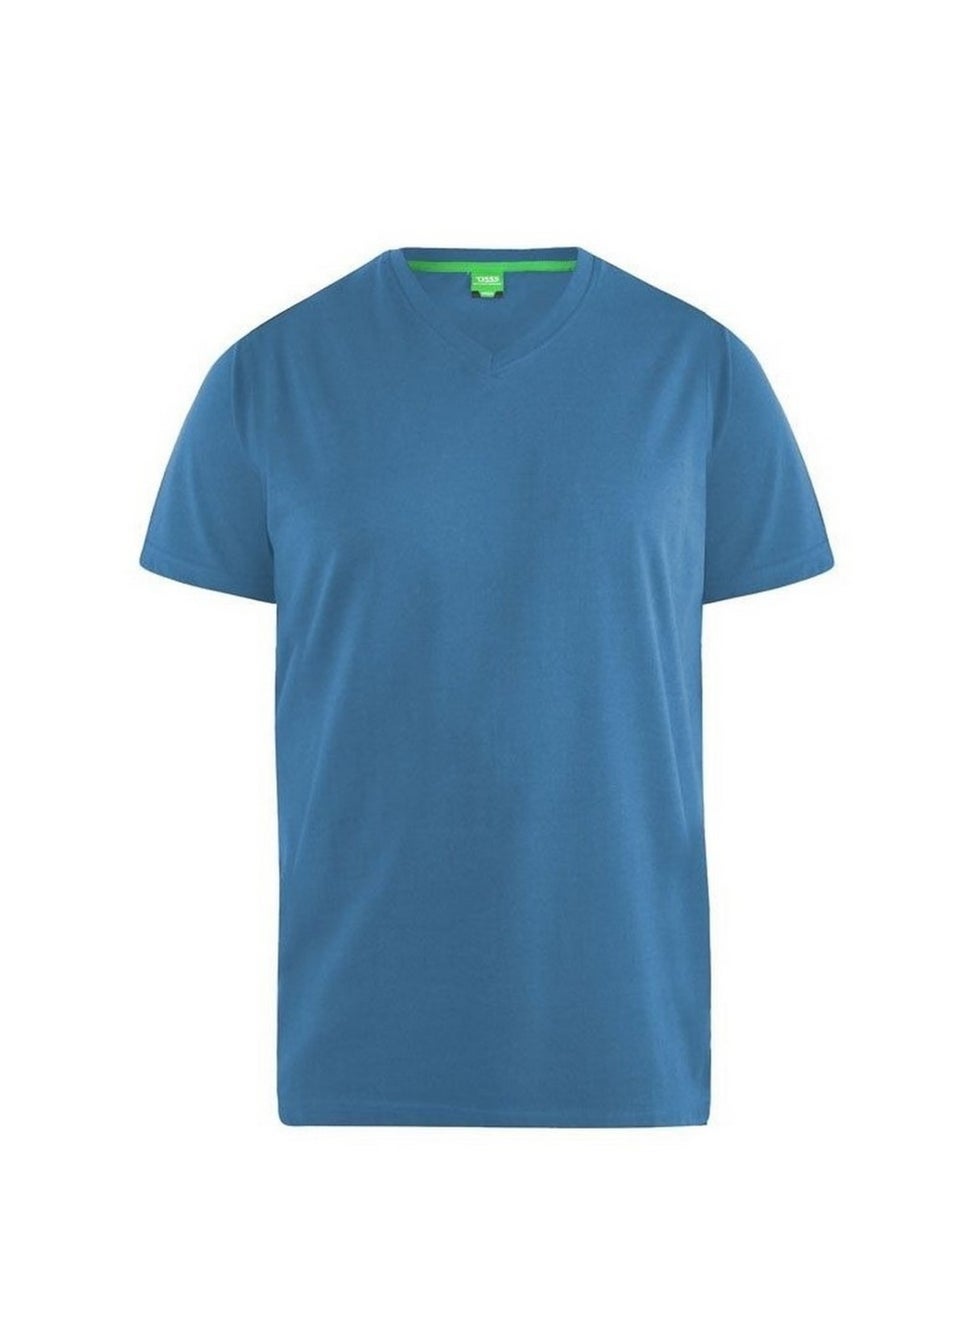 Duke Teal Signature 2 King Size Cotton V Neck T-Shirt